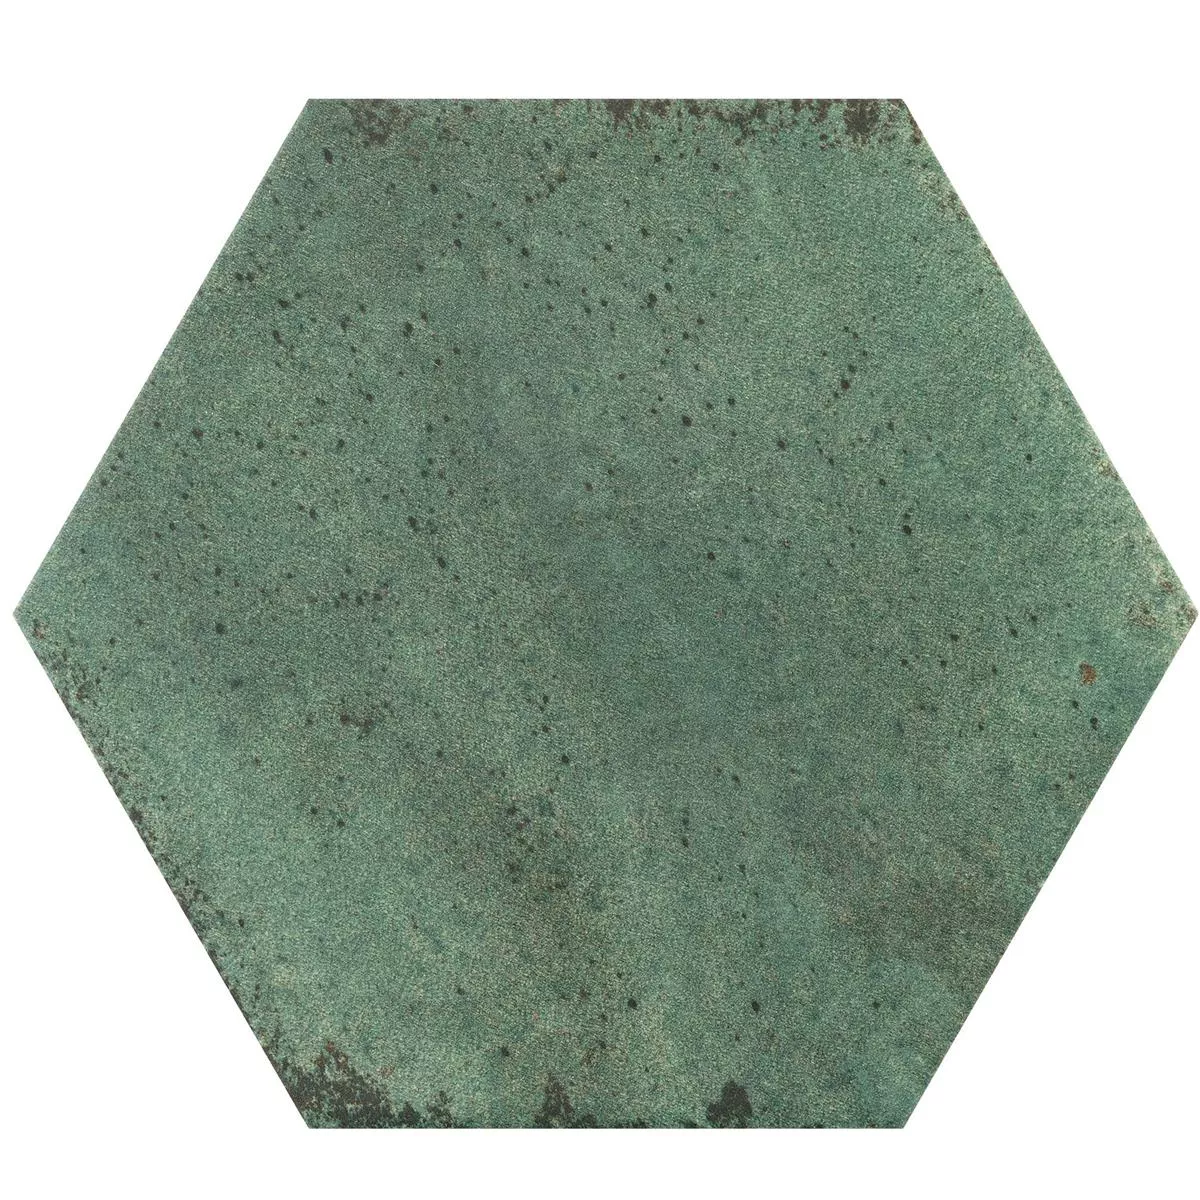 Campione Piastrelle Arosa Opaco Esagono Verde Smeraldo 17,3x15cm